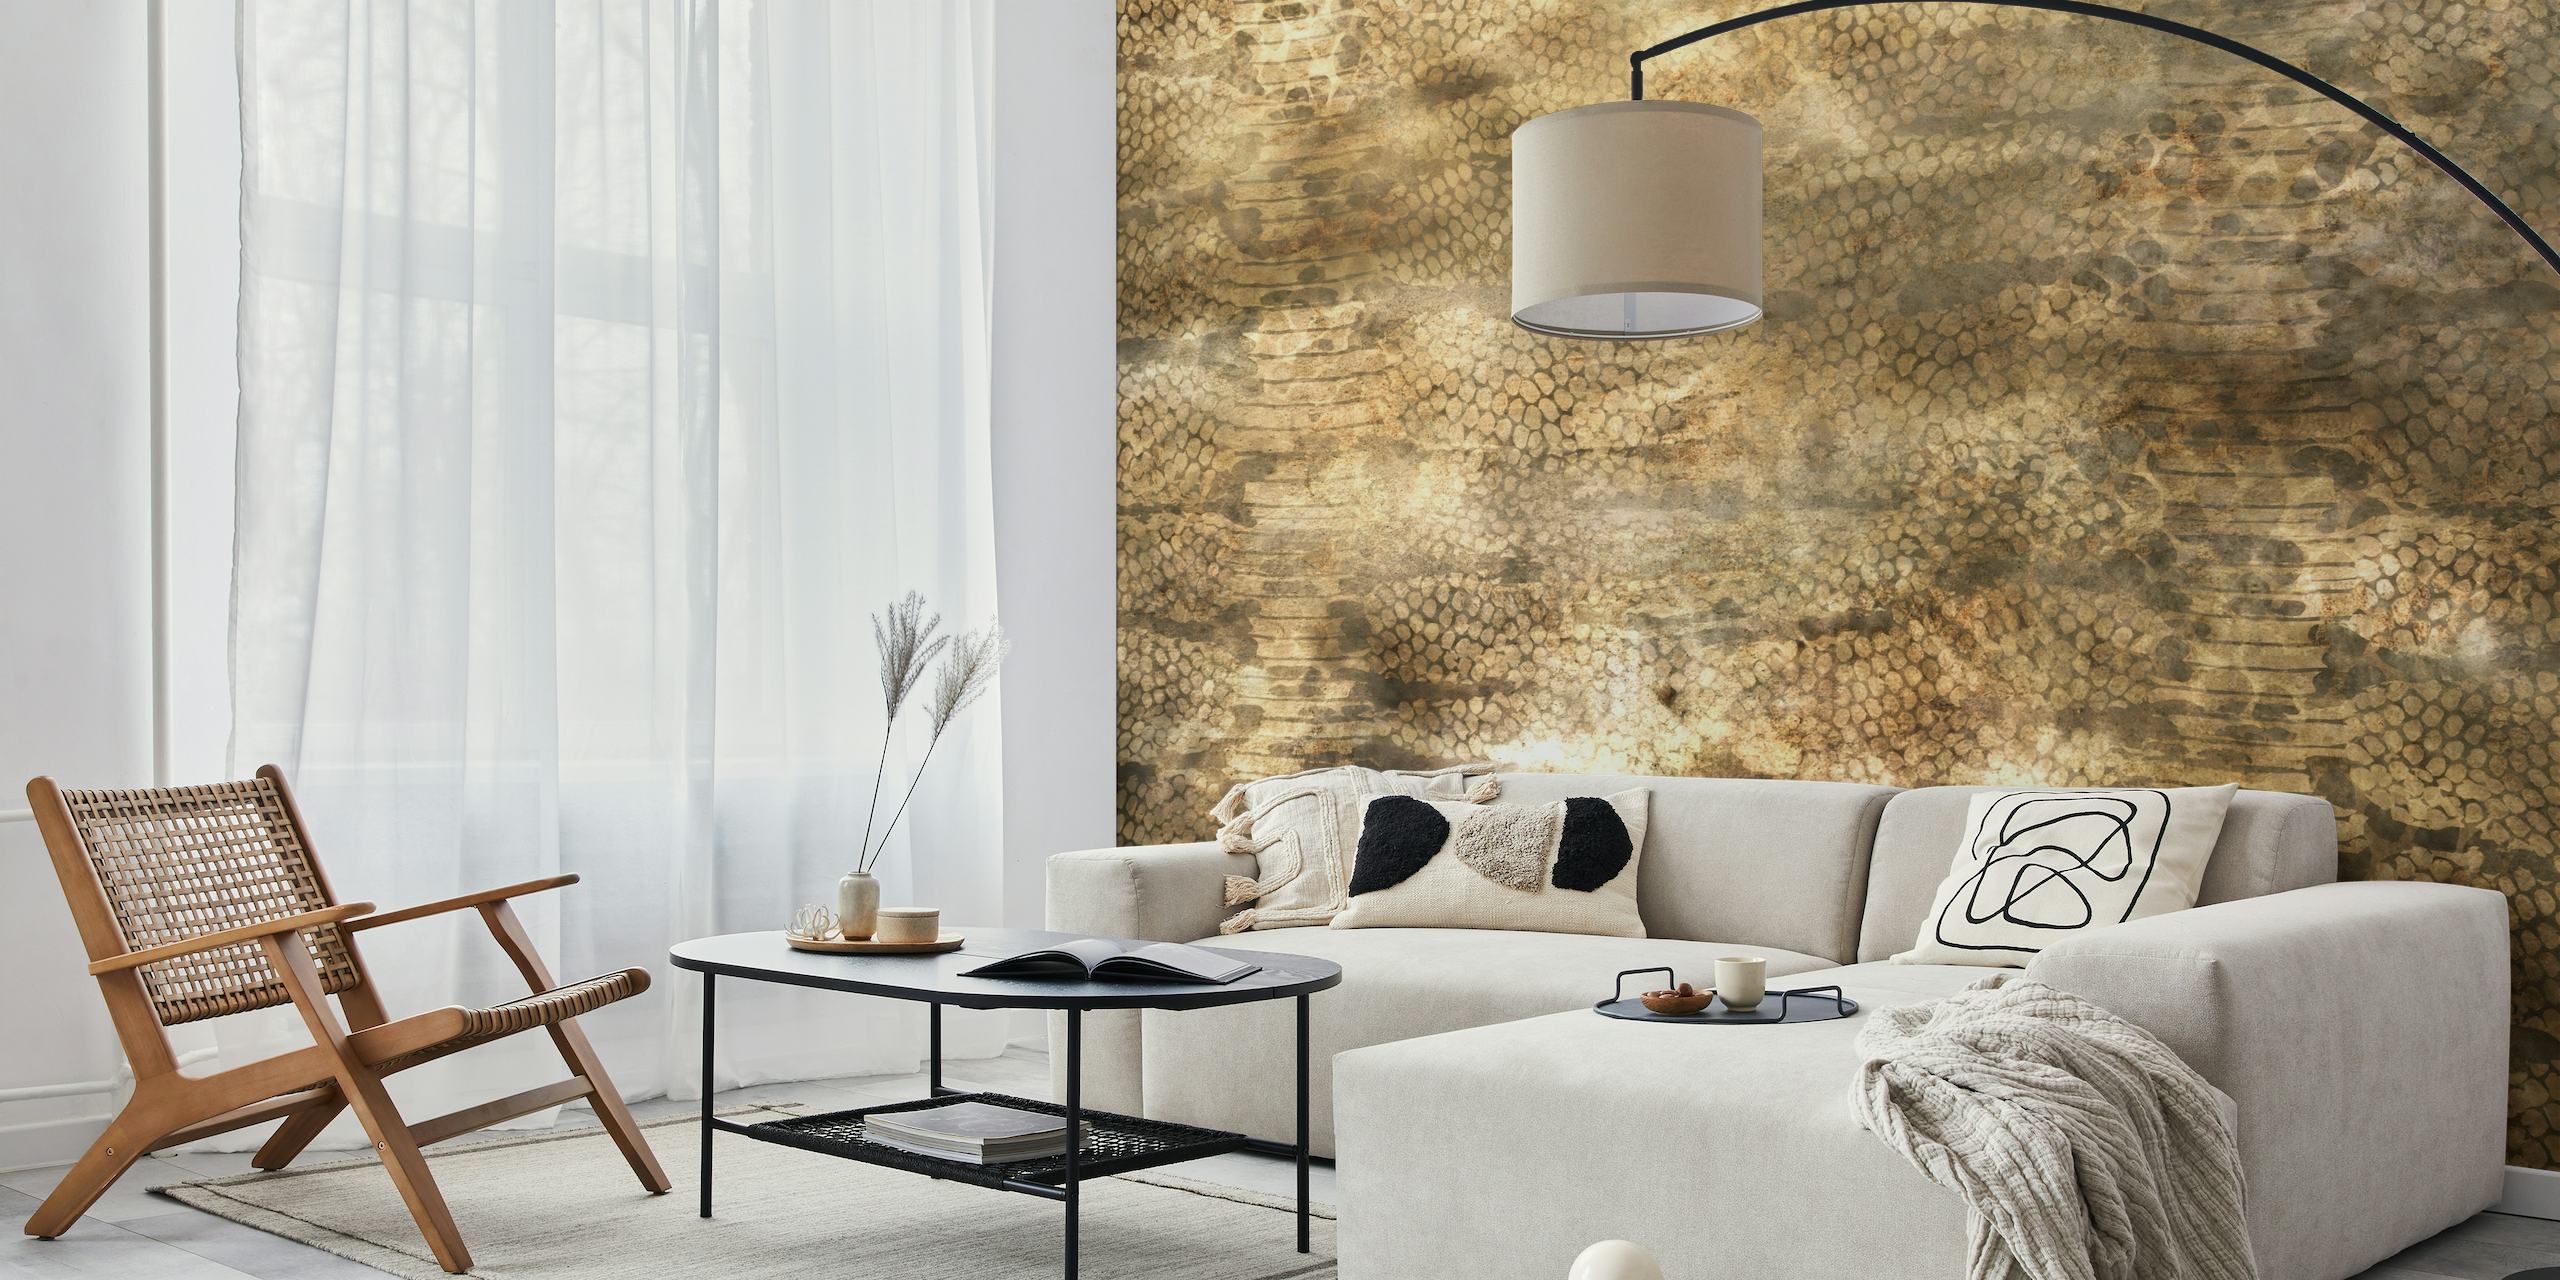 Fotomural con estampado de piel de serpiente dorada y bronceada para un diseño interior lujoso